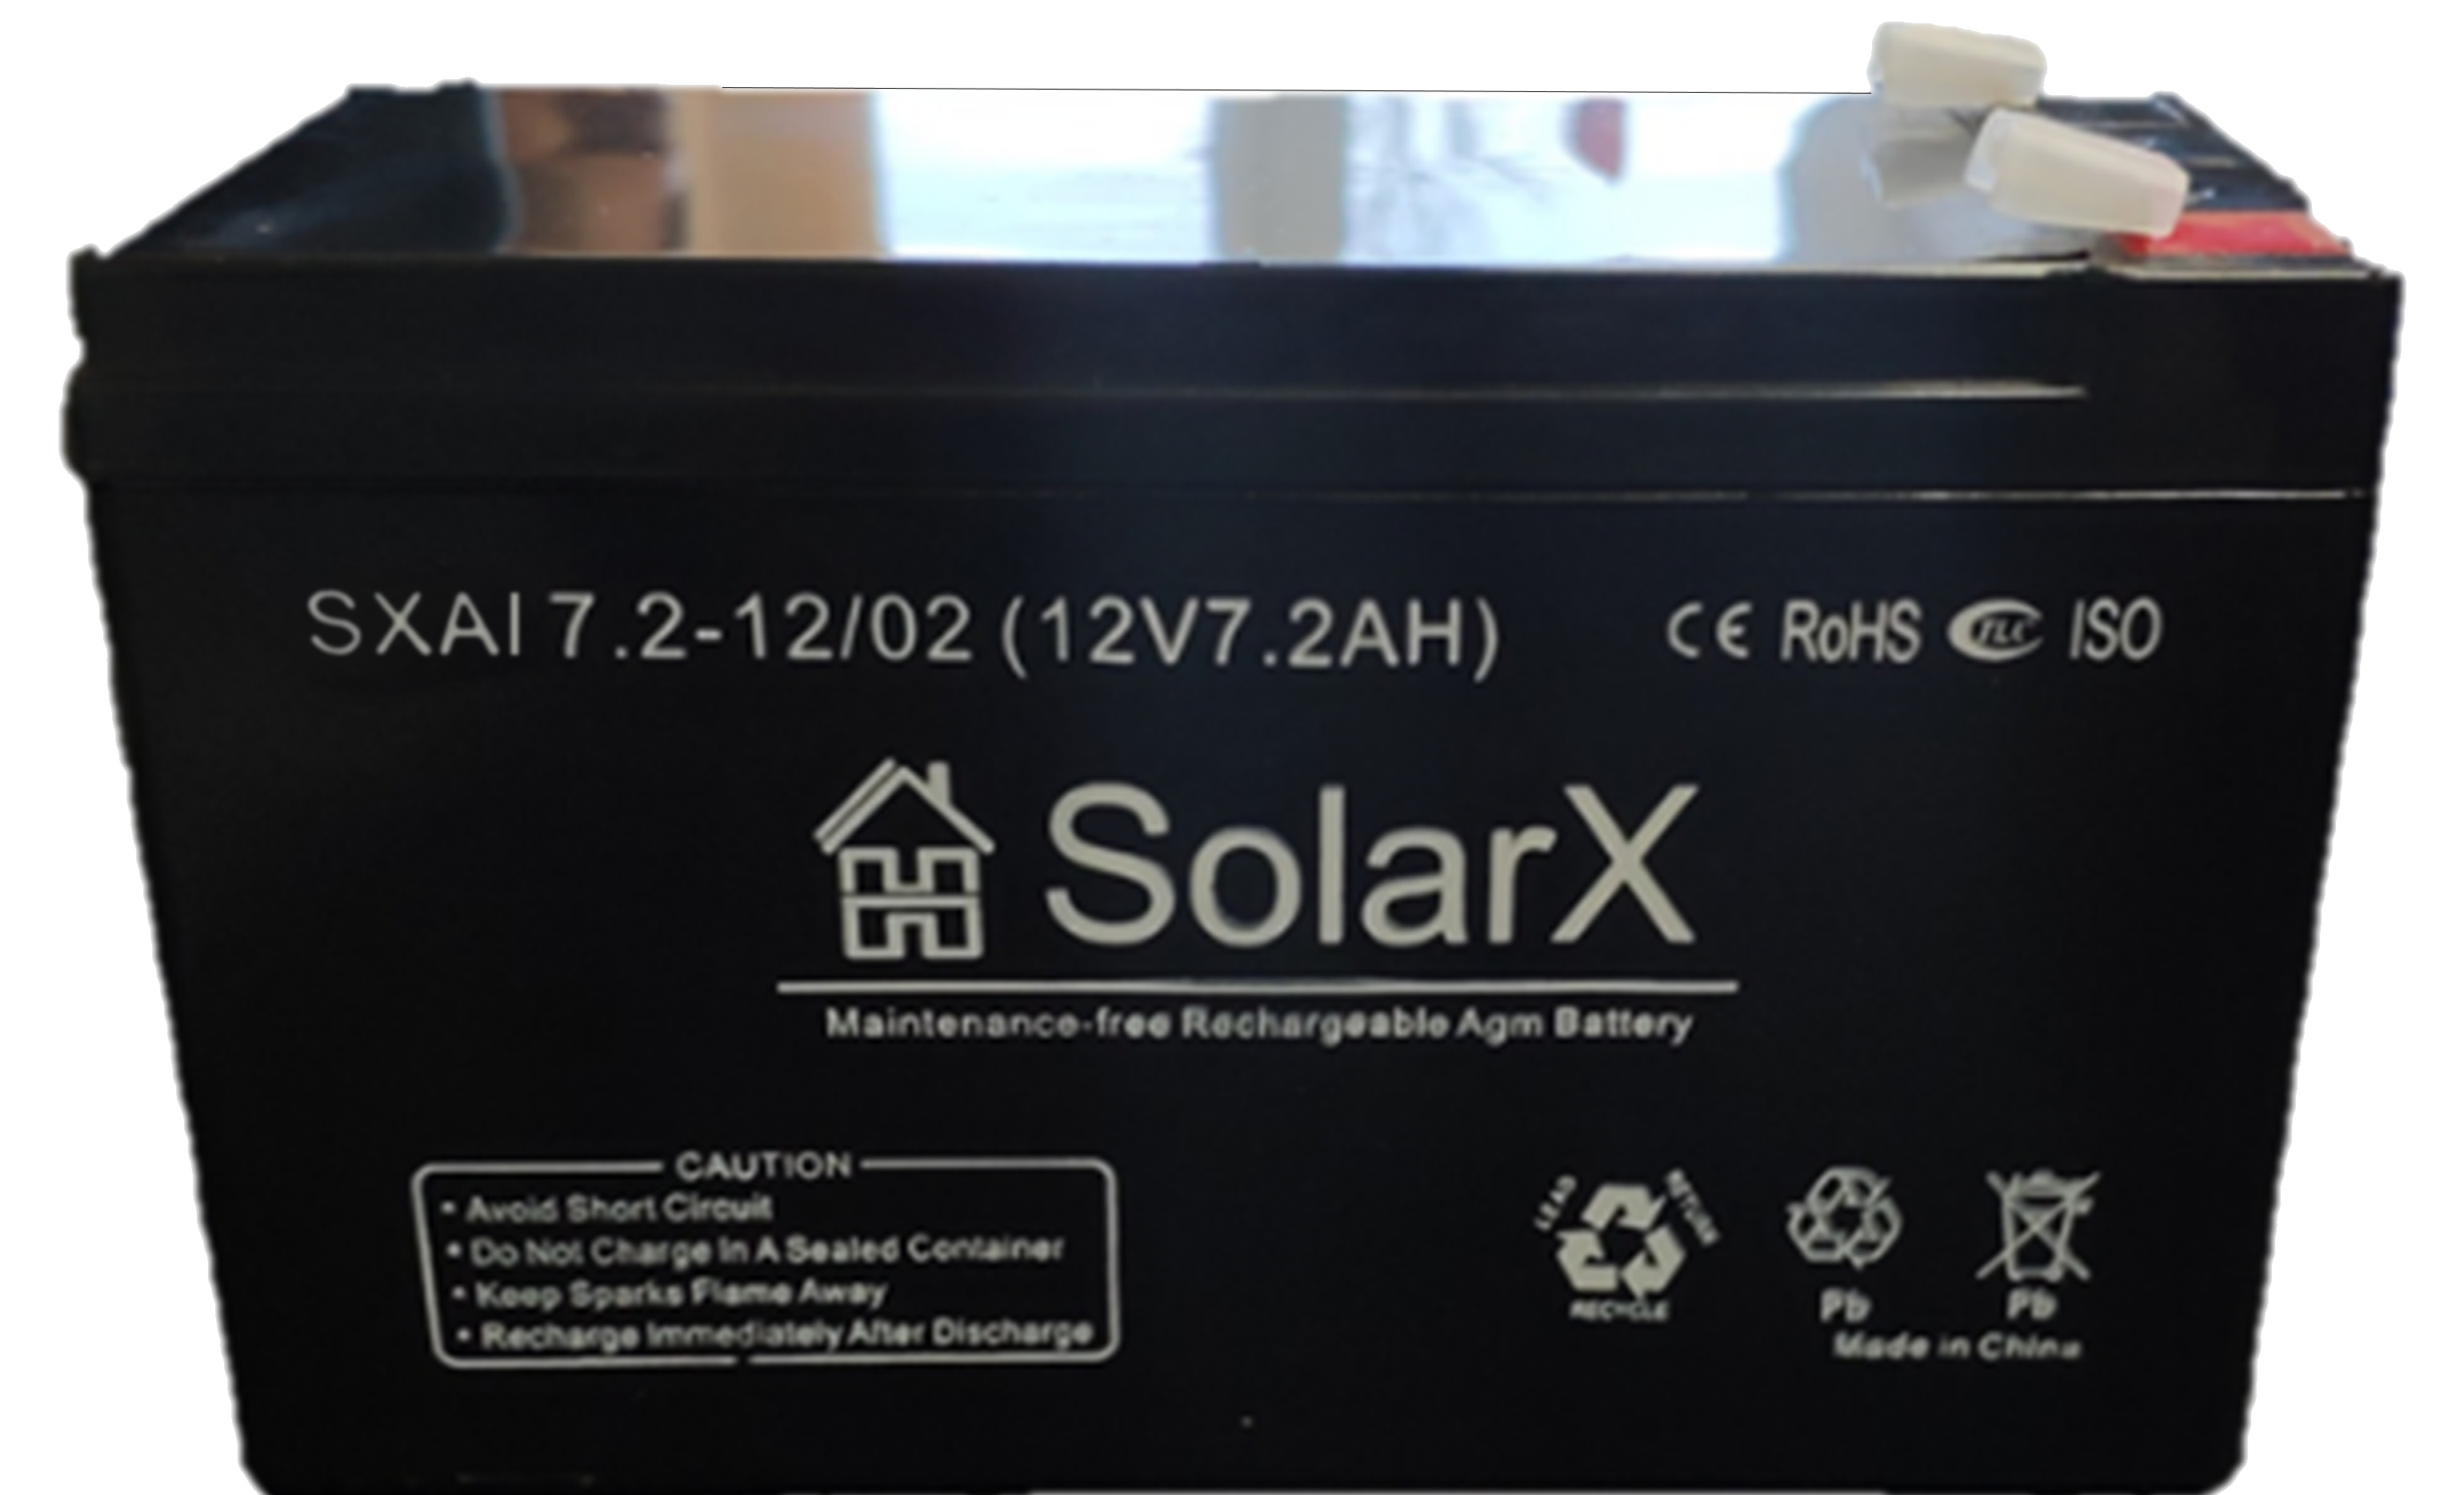 Solarx sxal 7.2 12